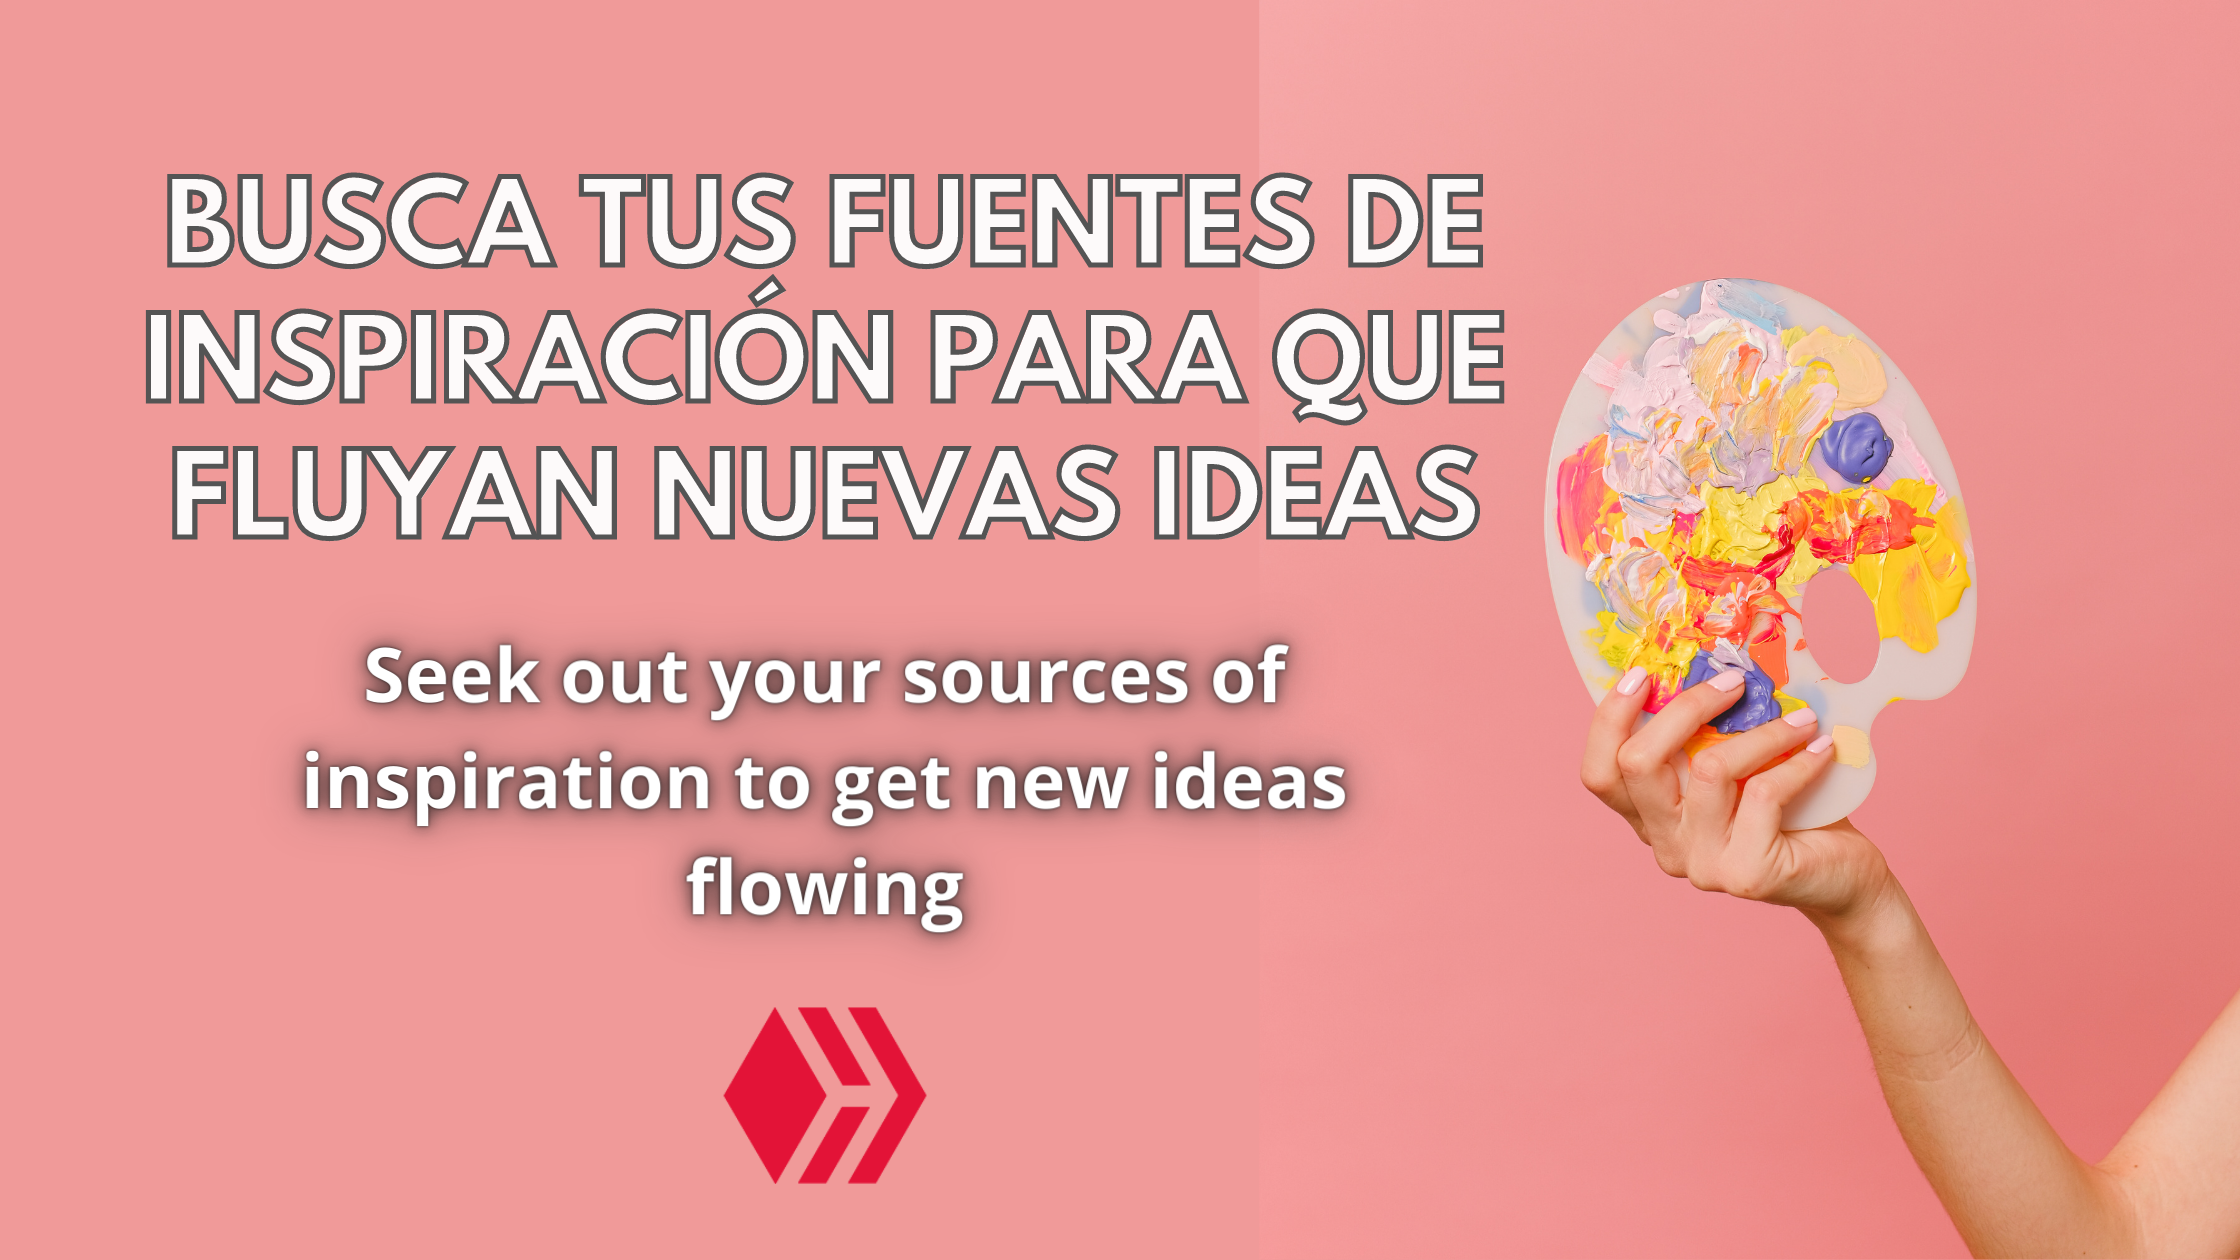 Busca tus fuentes de inspiración para que fluyan nuevas ideas - 2.png